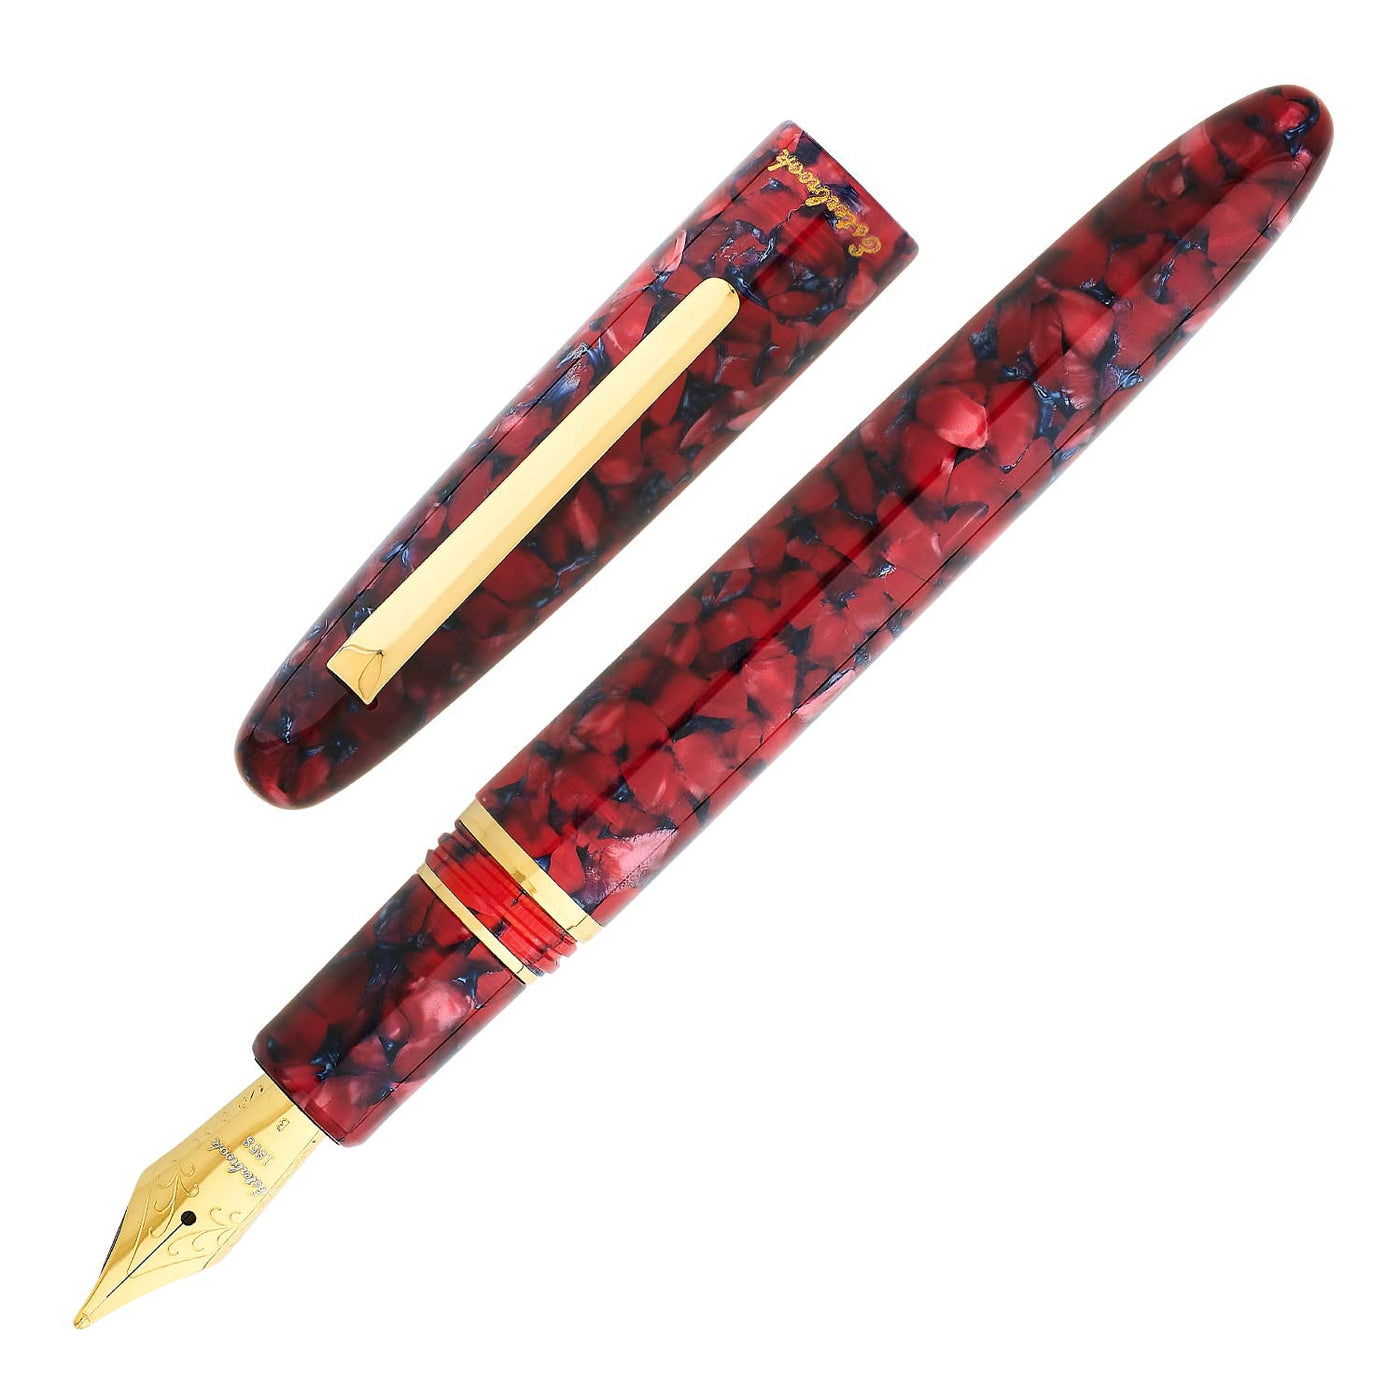 Esterbrook Estie Regular Fountain Pen - Scarlet GT 1 